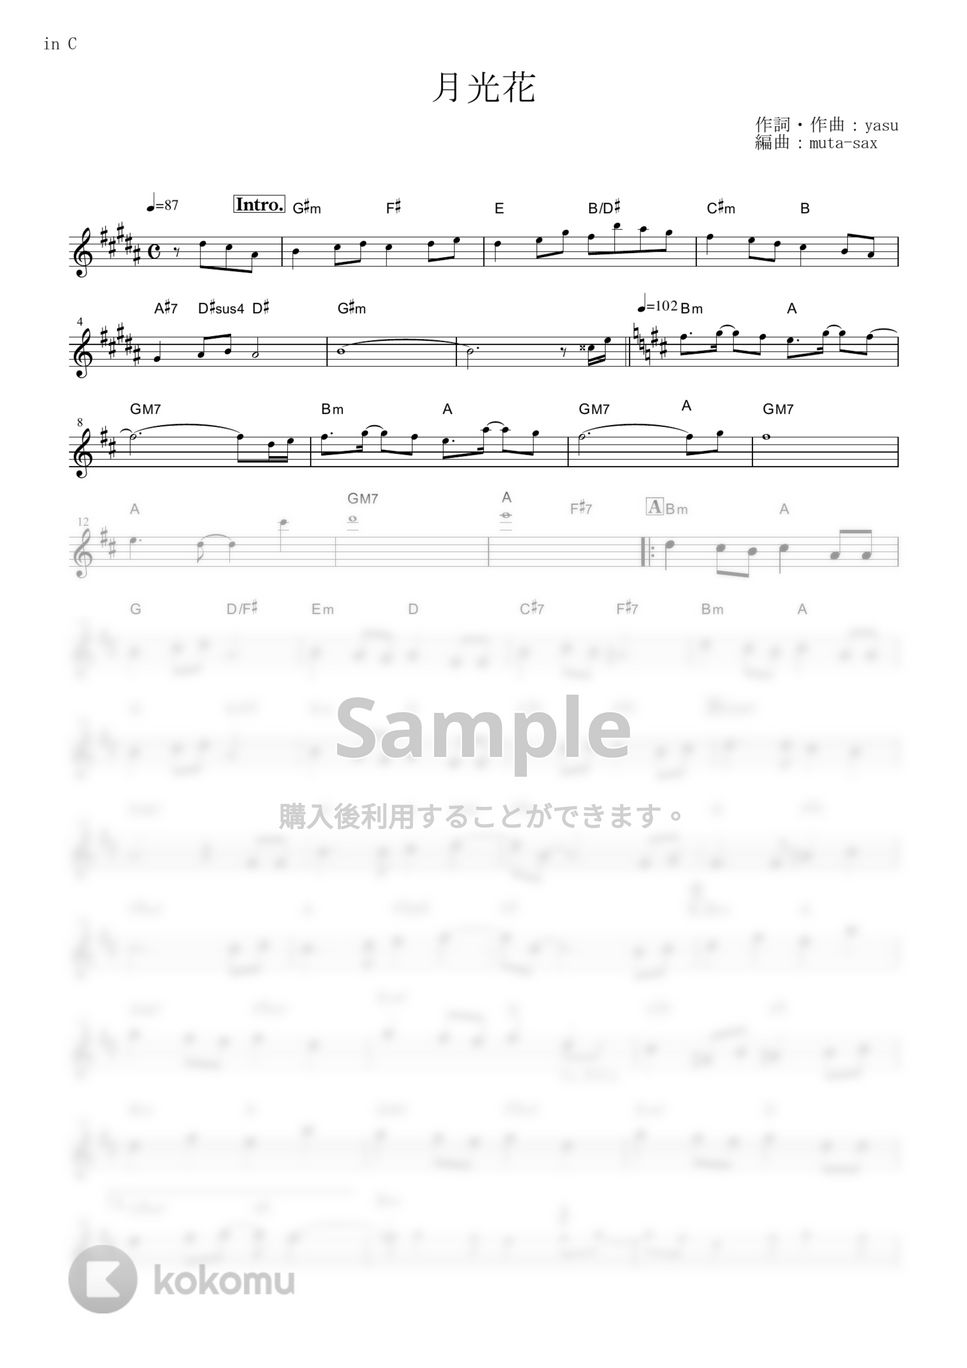 Janne Da Arc - 月光花 (『ブラック・ジャック』 / in C) by muta-sax